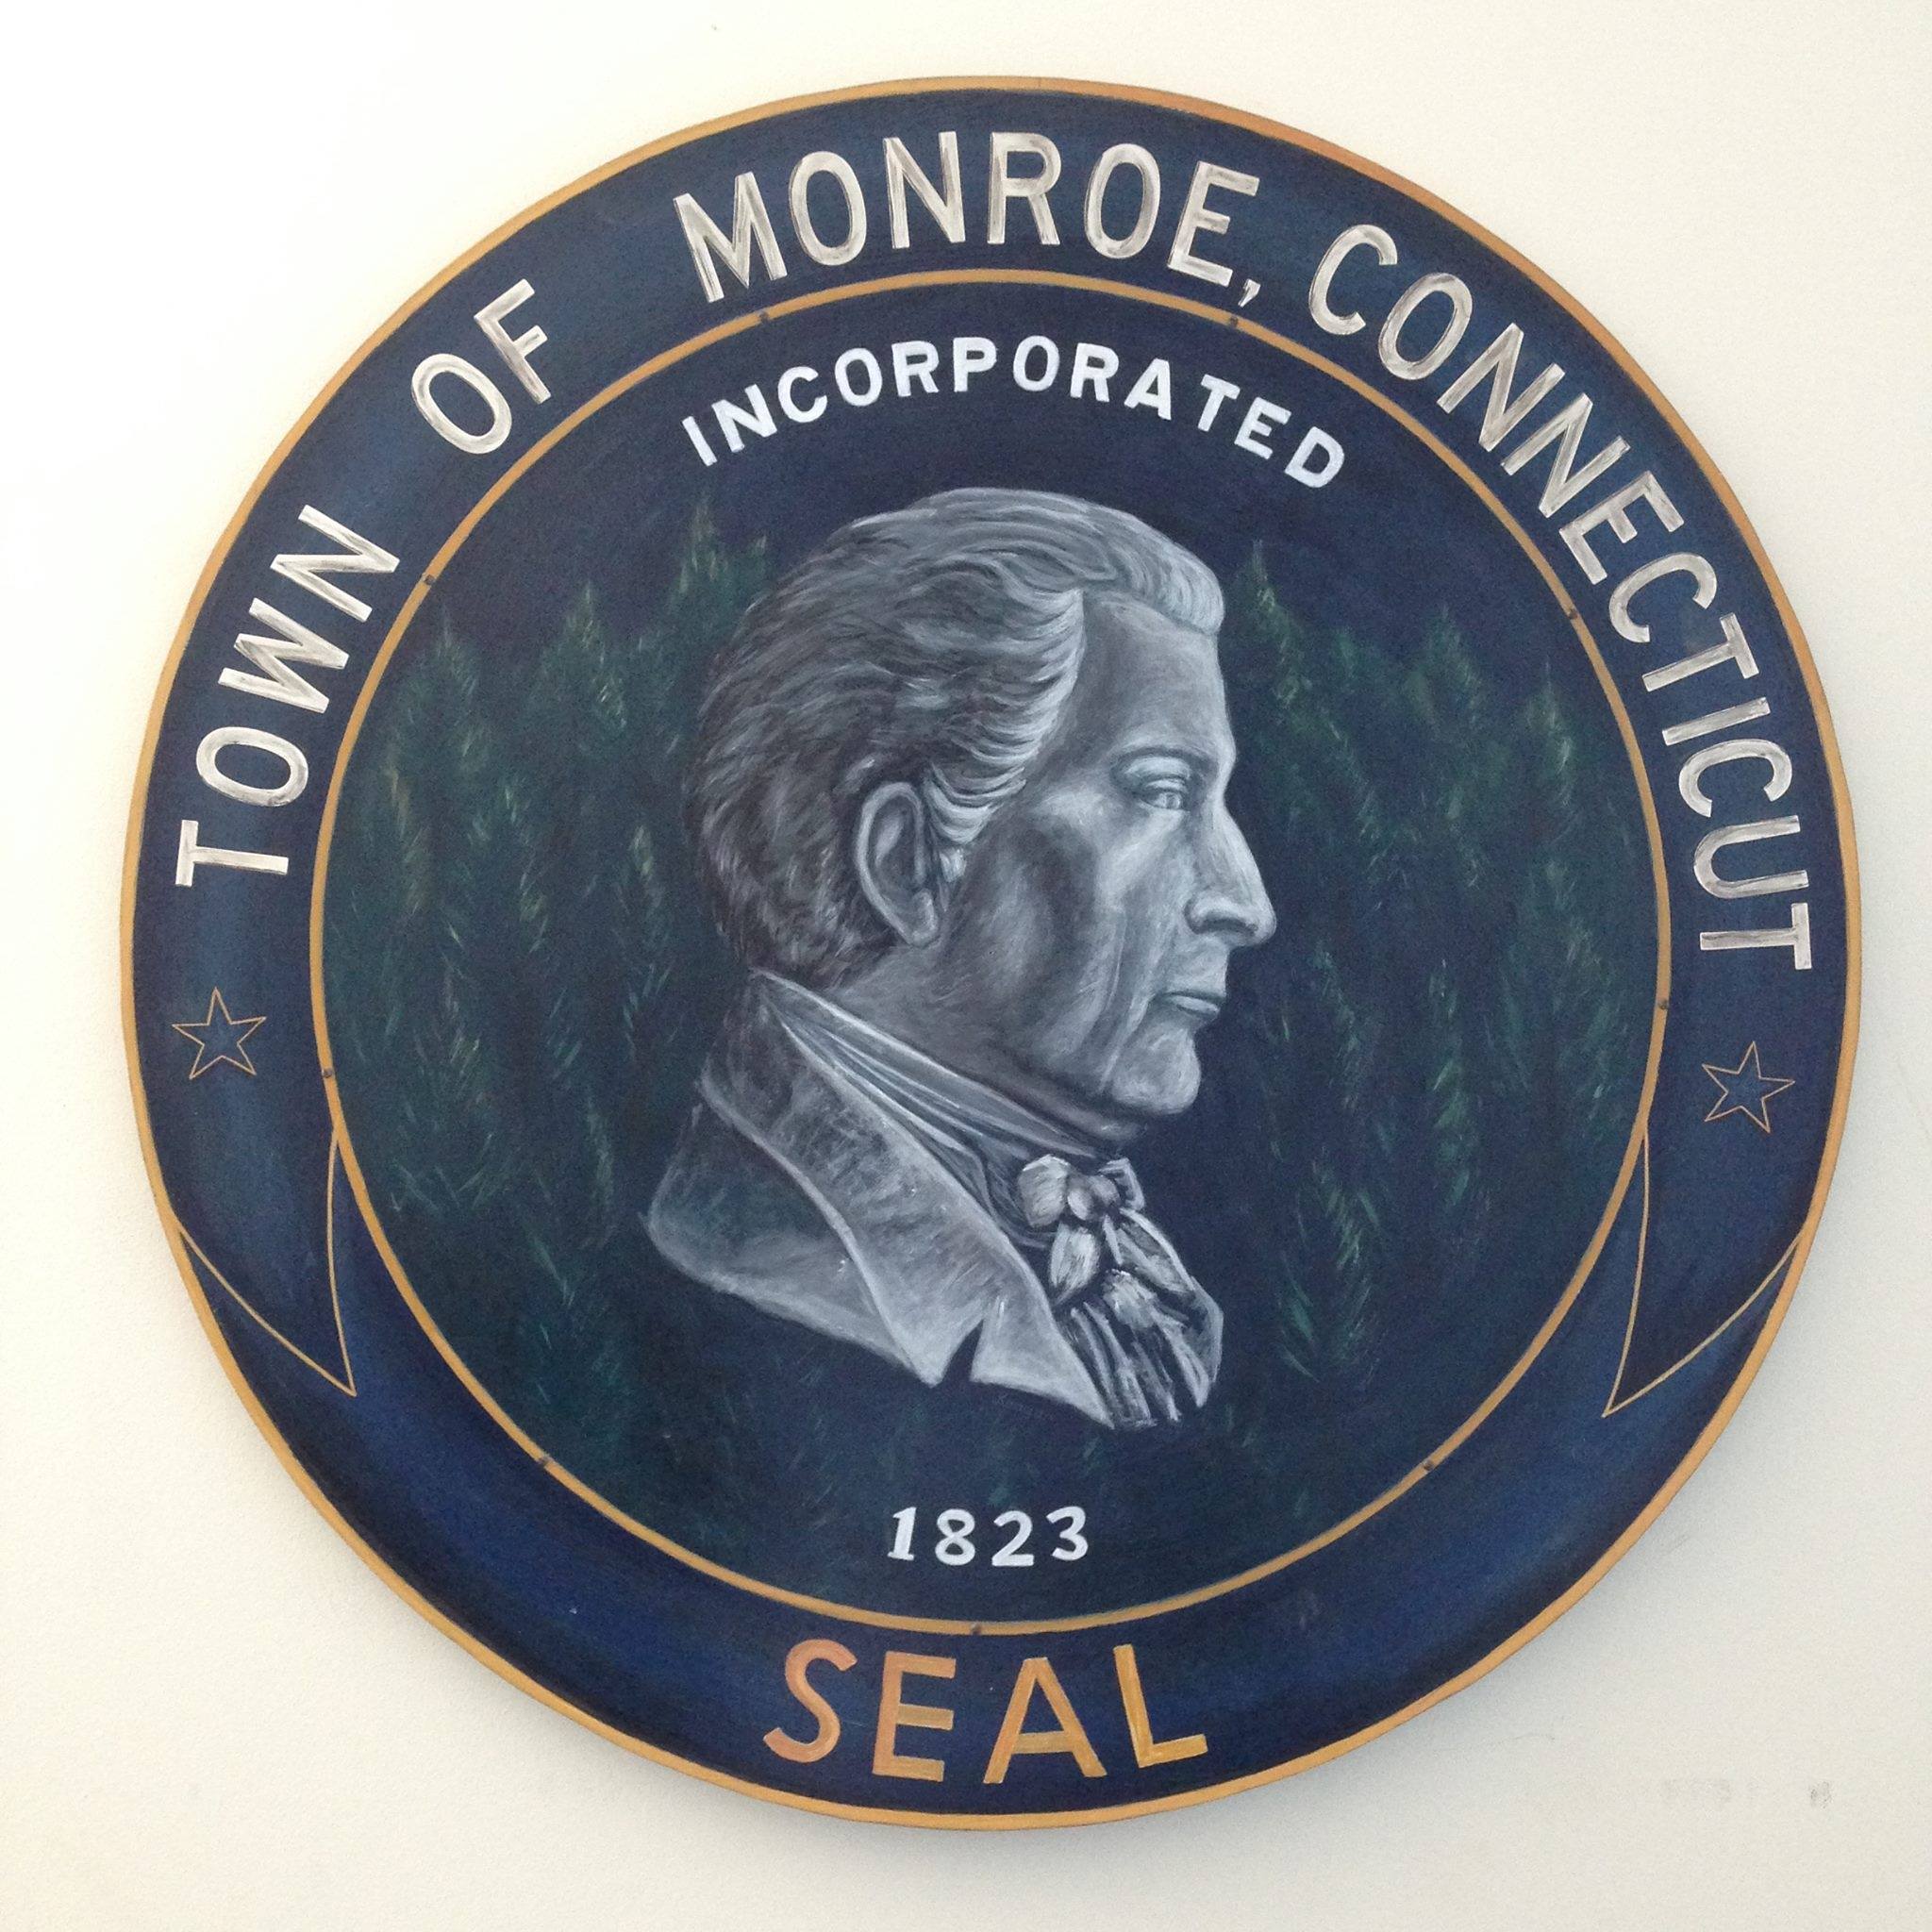 Monroe County Health Center